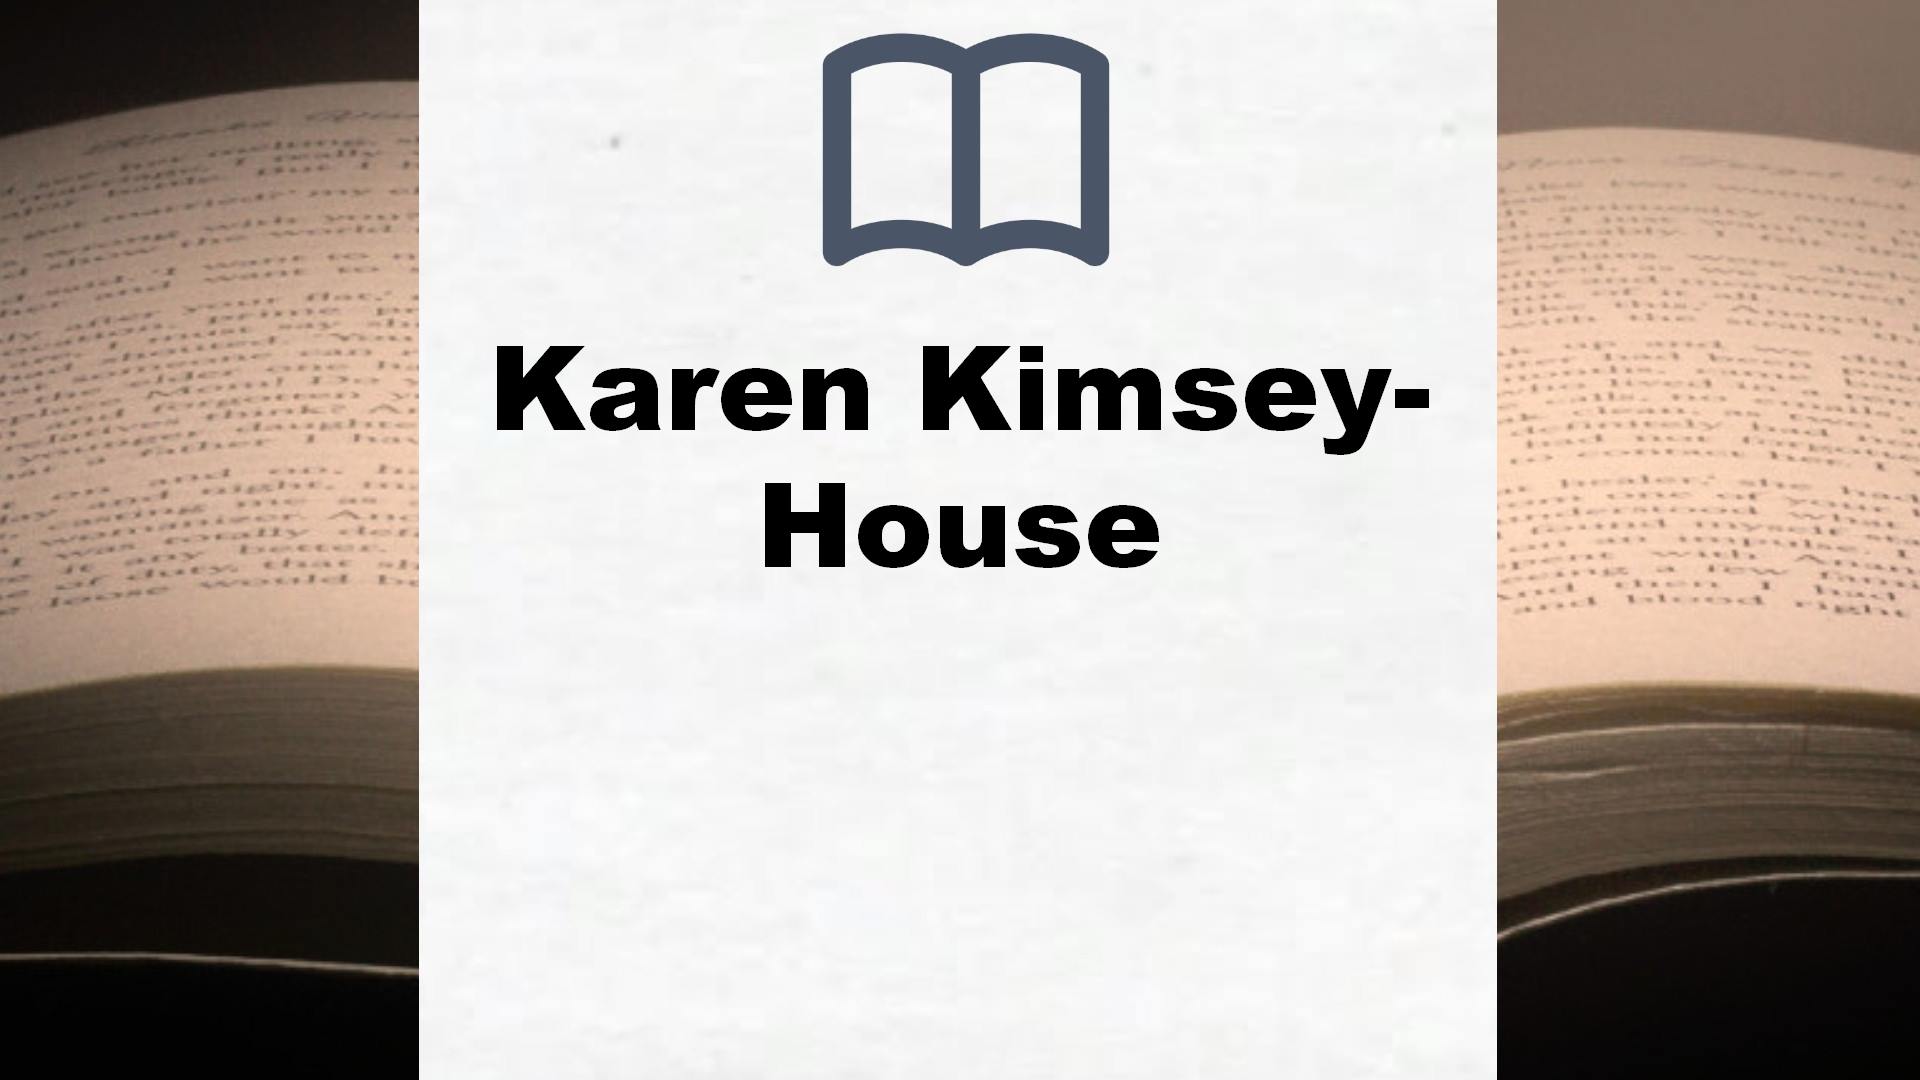 Libros Karen Kimsey-House